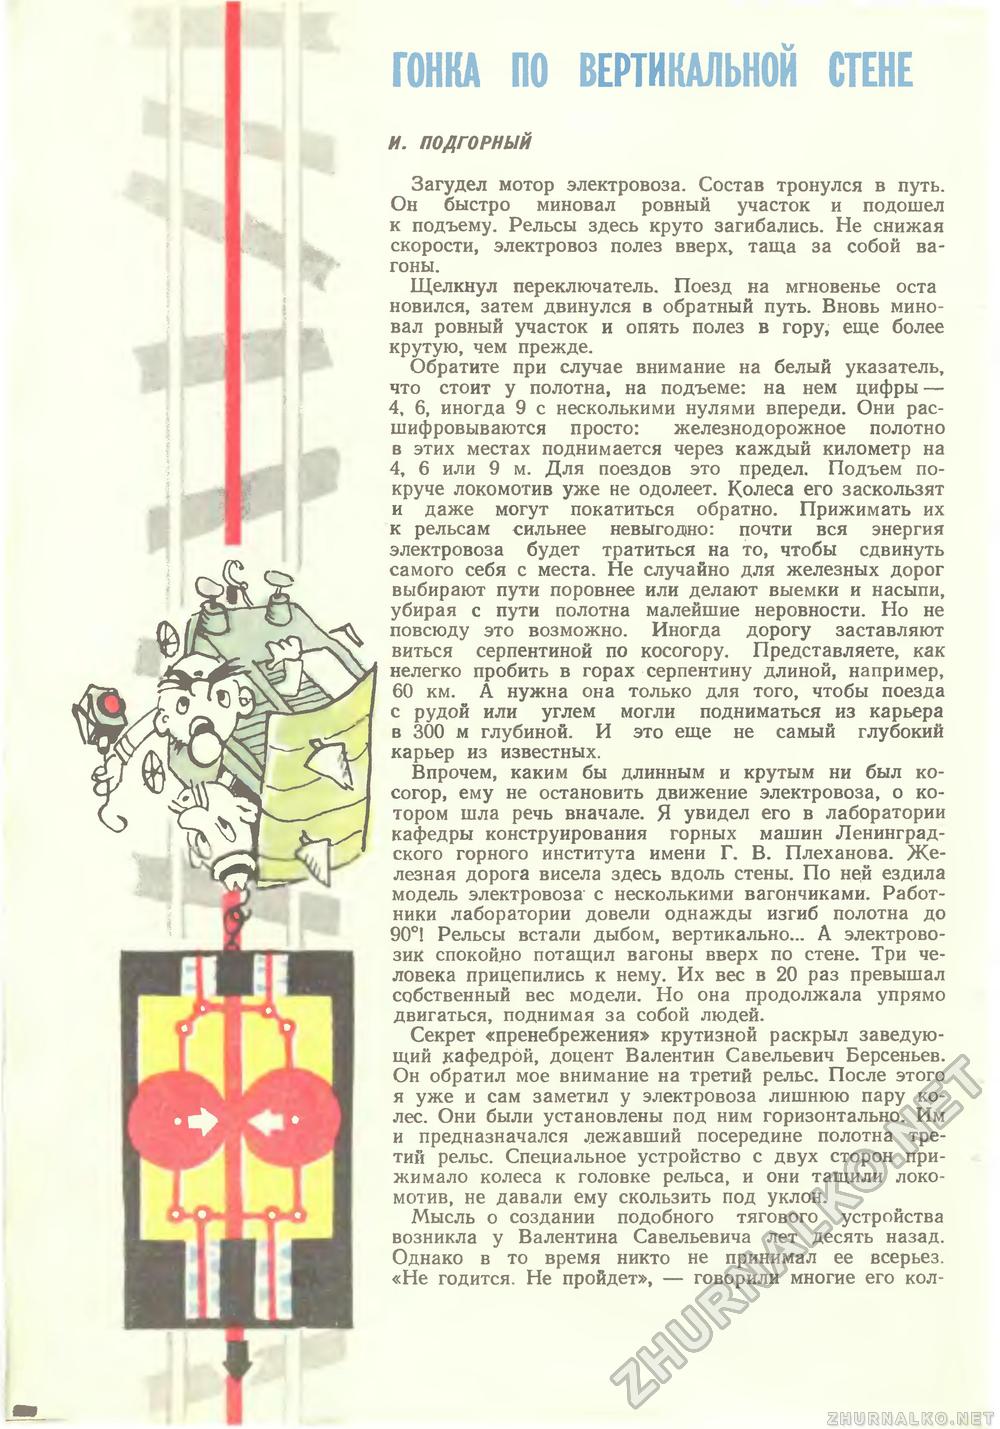   1967-05,  10